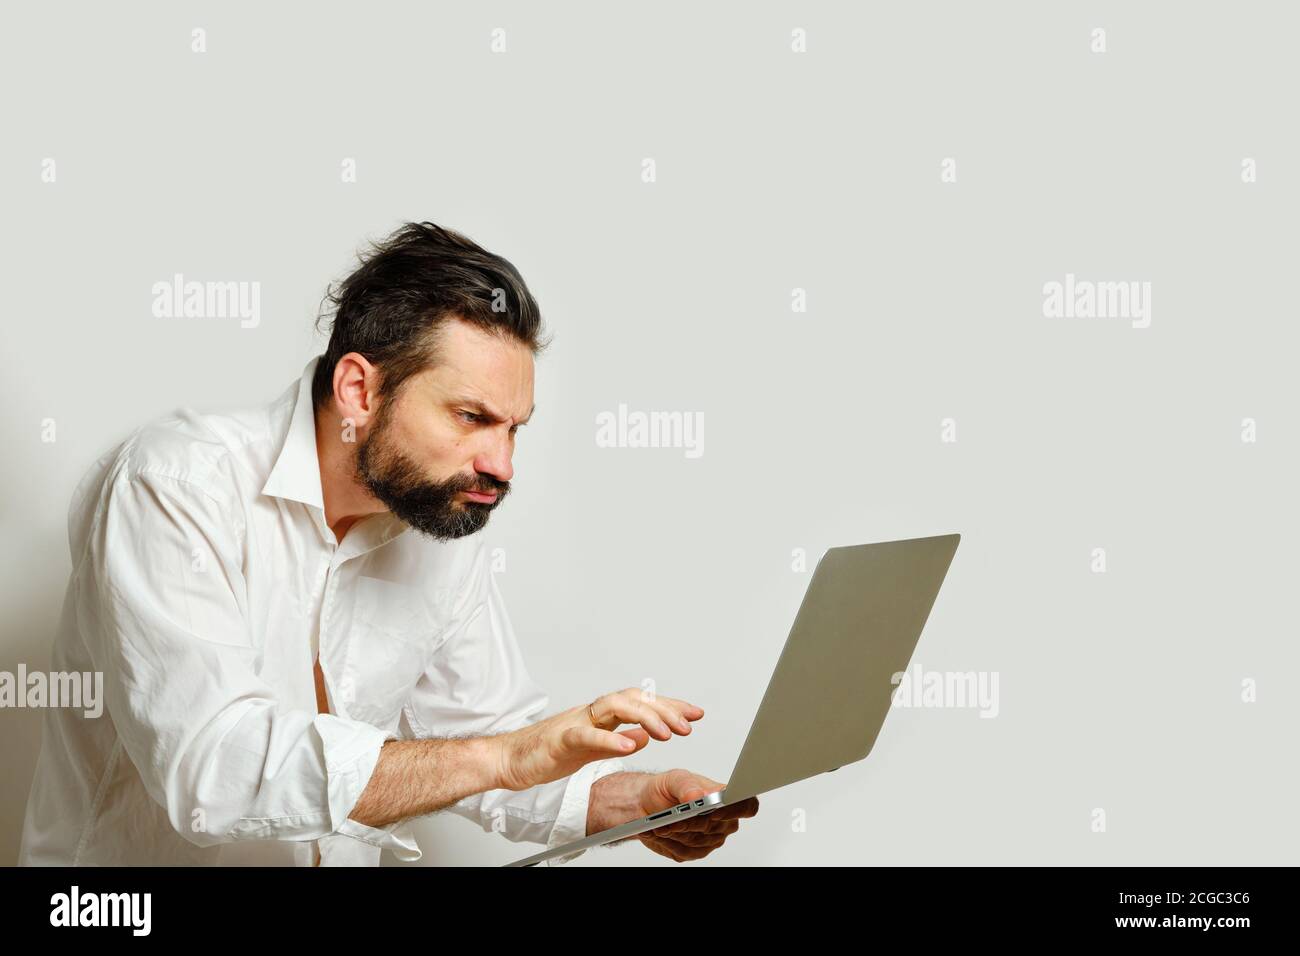 Homme caucasien regardant avec le mécontentement angrly dans l'écran d'ordinateur portable isolé sur fond gris. Vue latérale. Émotions humaines, concept d'expression faciale Banque D'Images